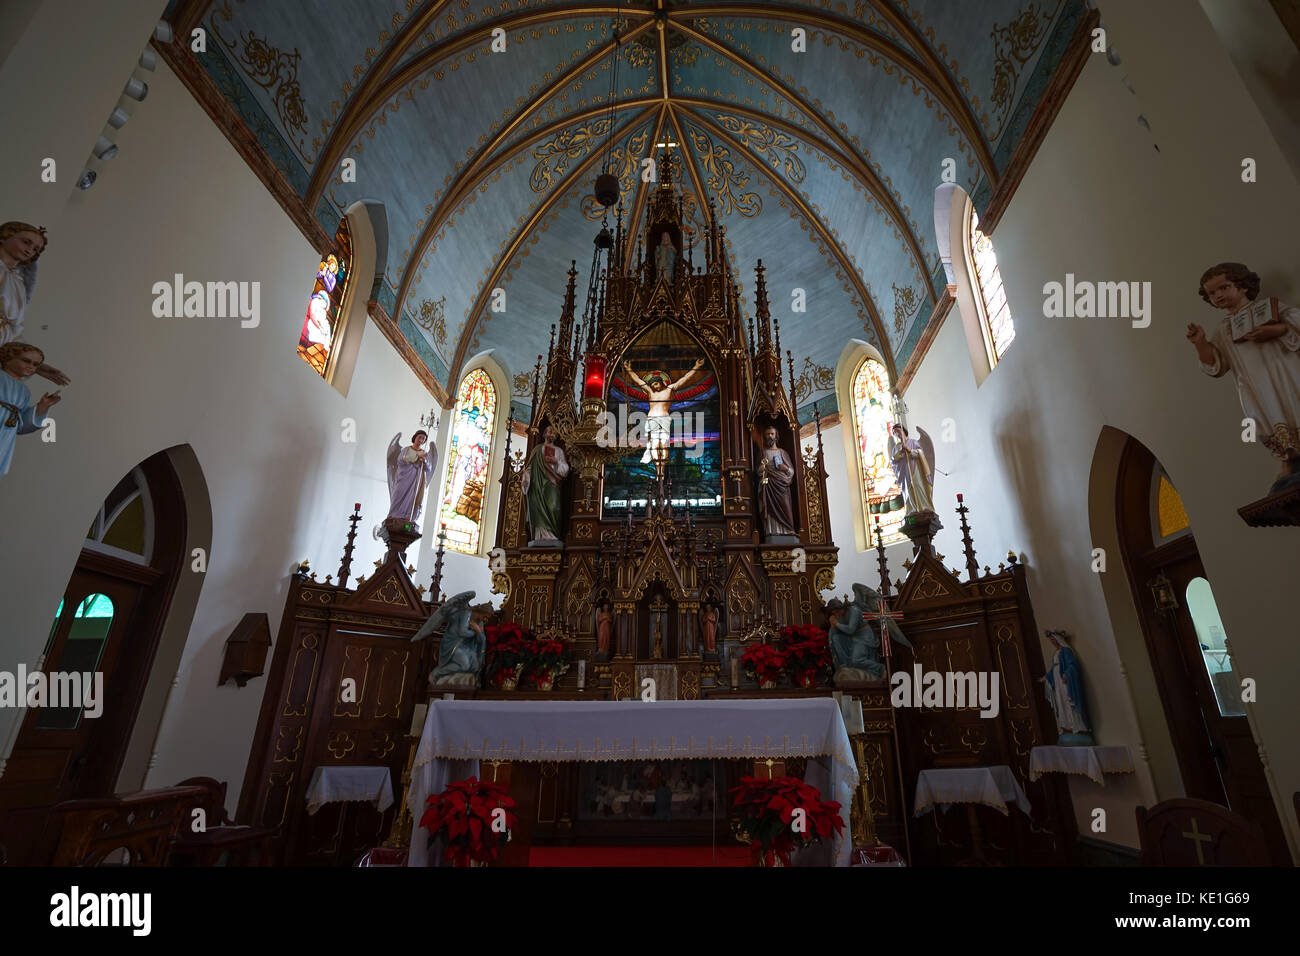 Dezember 30, 2015 Schulenburg, Texas, USA: Geburt Marias, Jungfrau der katholischen Kirche altair Details in den hohen Bergen, Teil der bemalten Kirchen Stockfoto